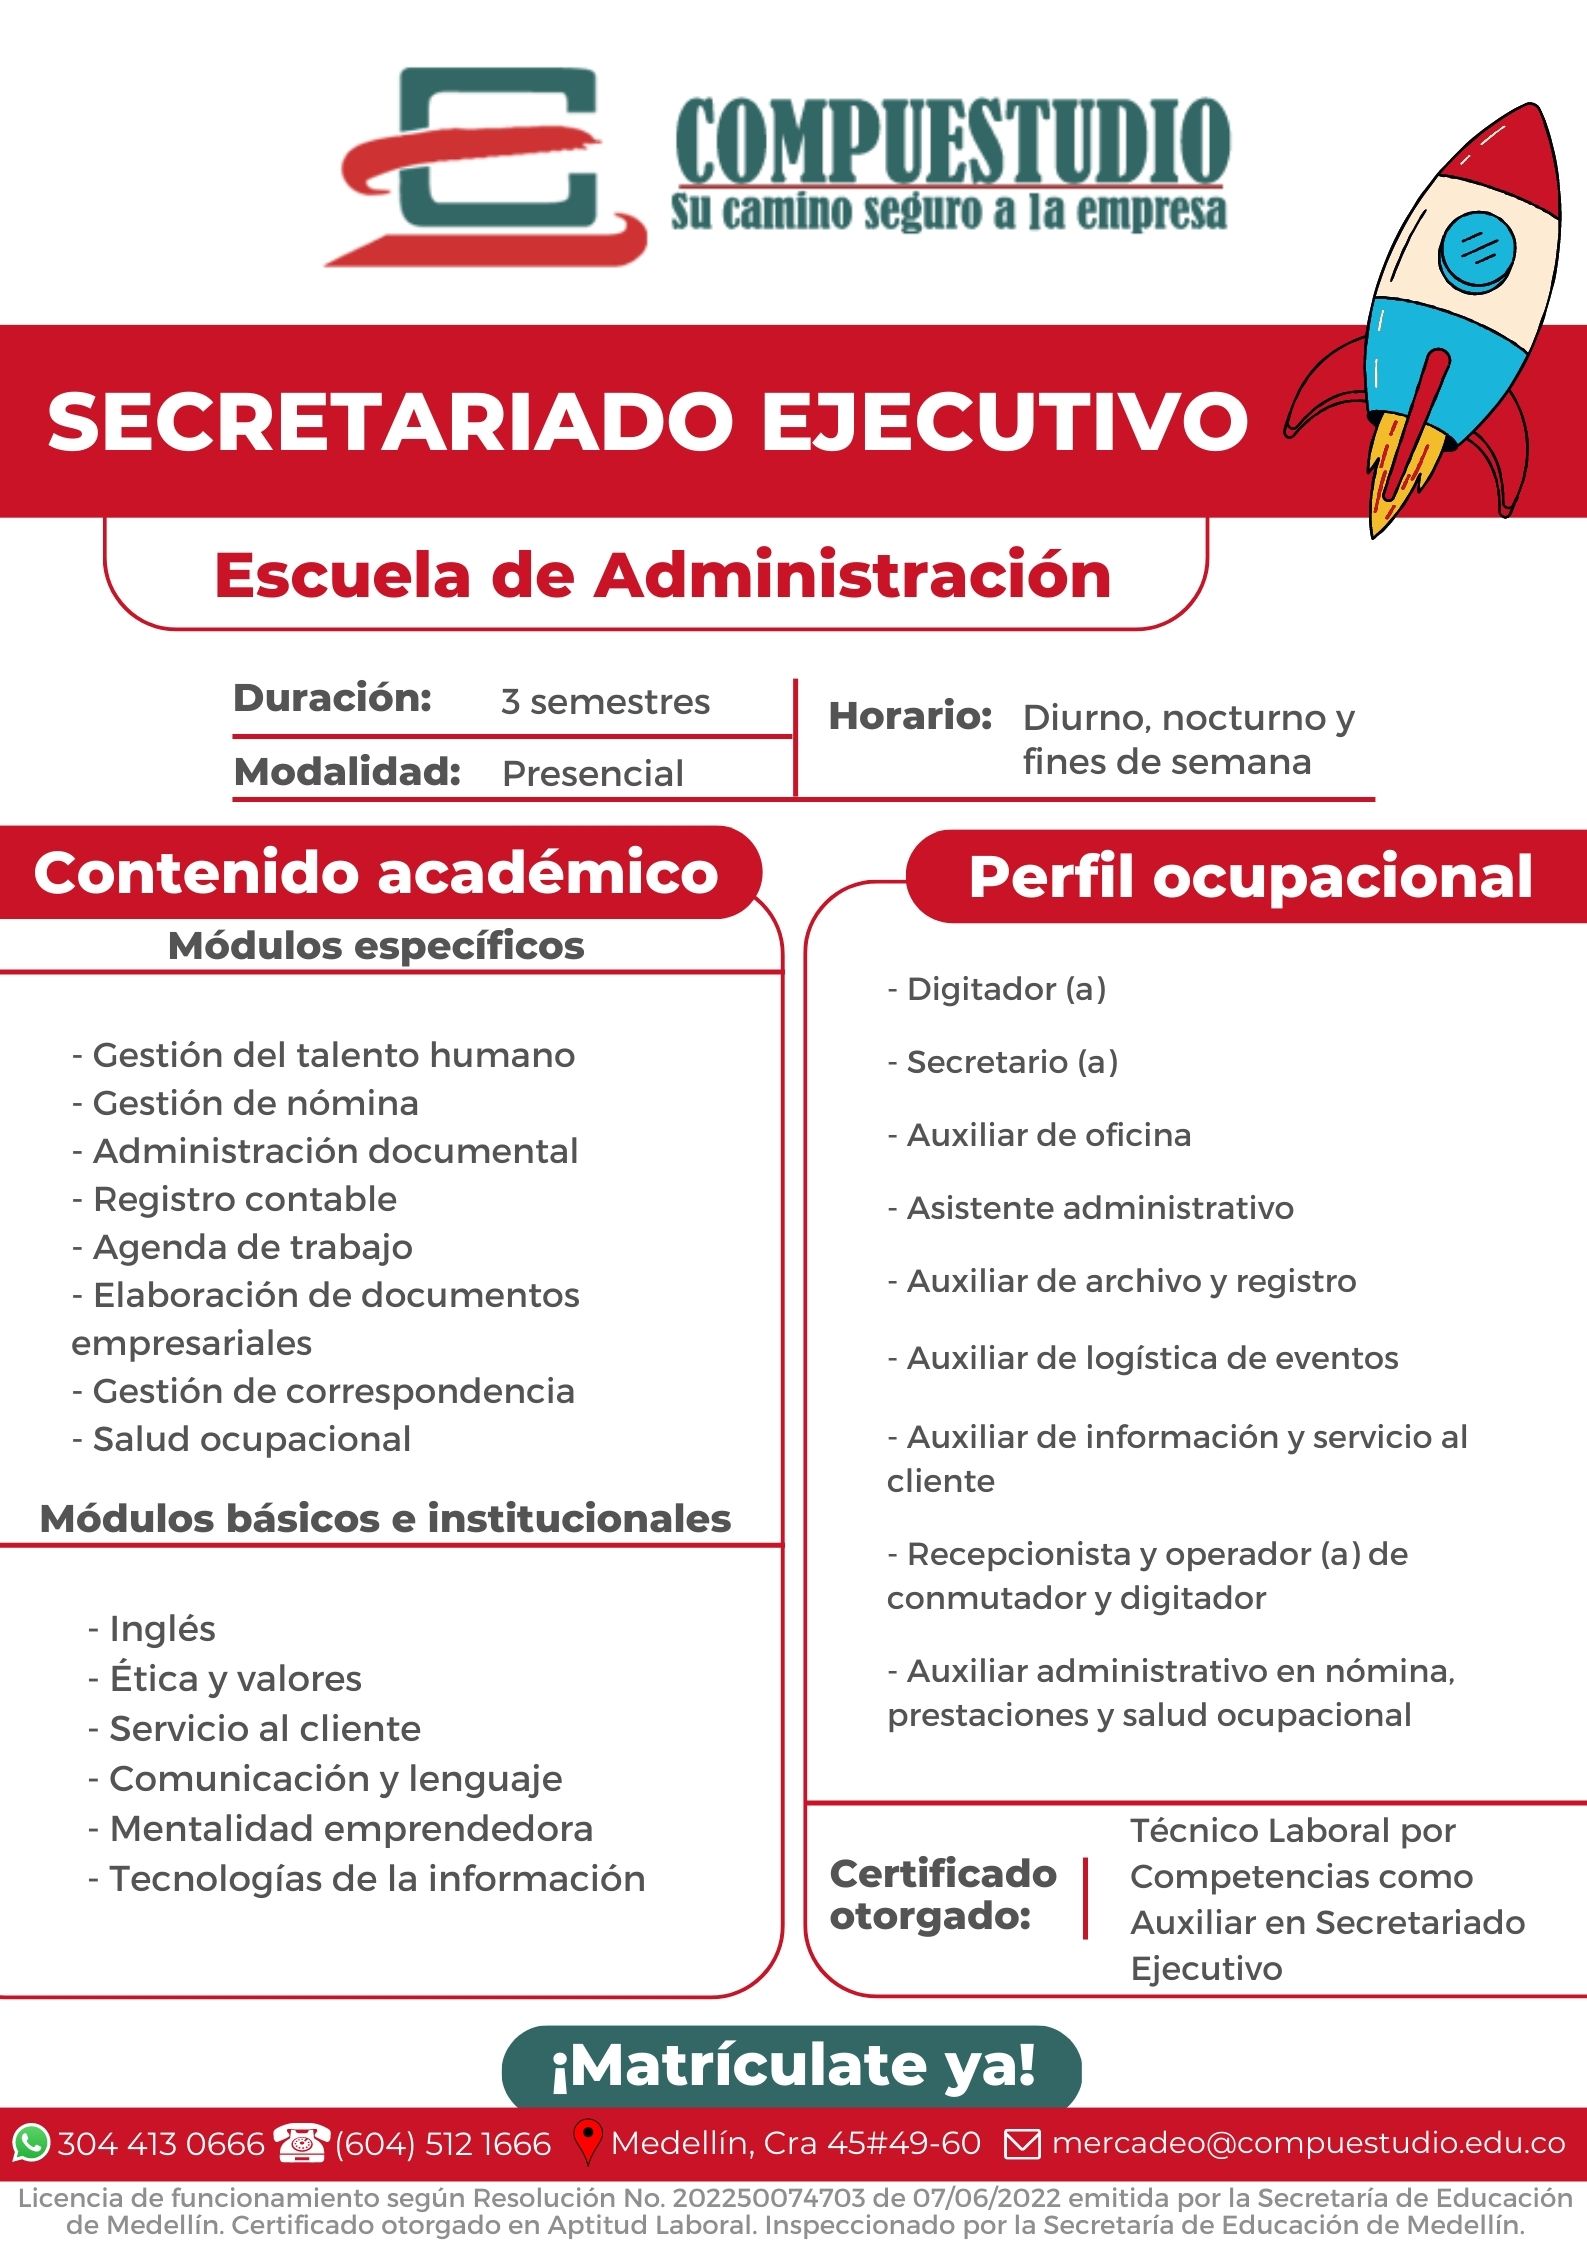 Secretariado ejecutivo, Medellín Compuestudio